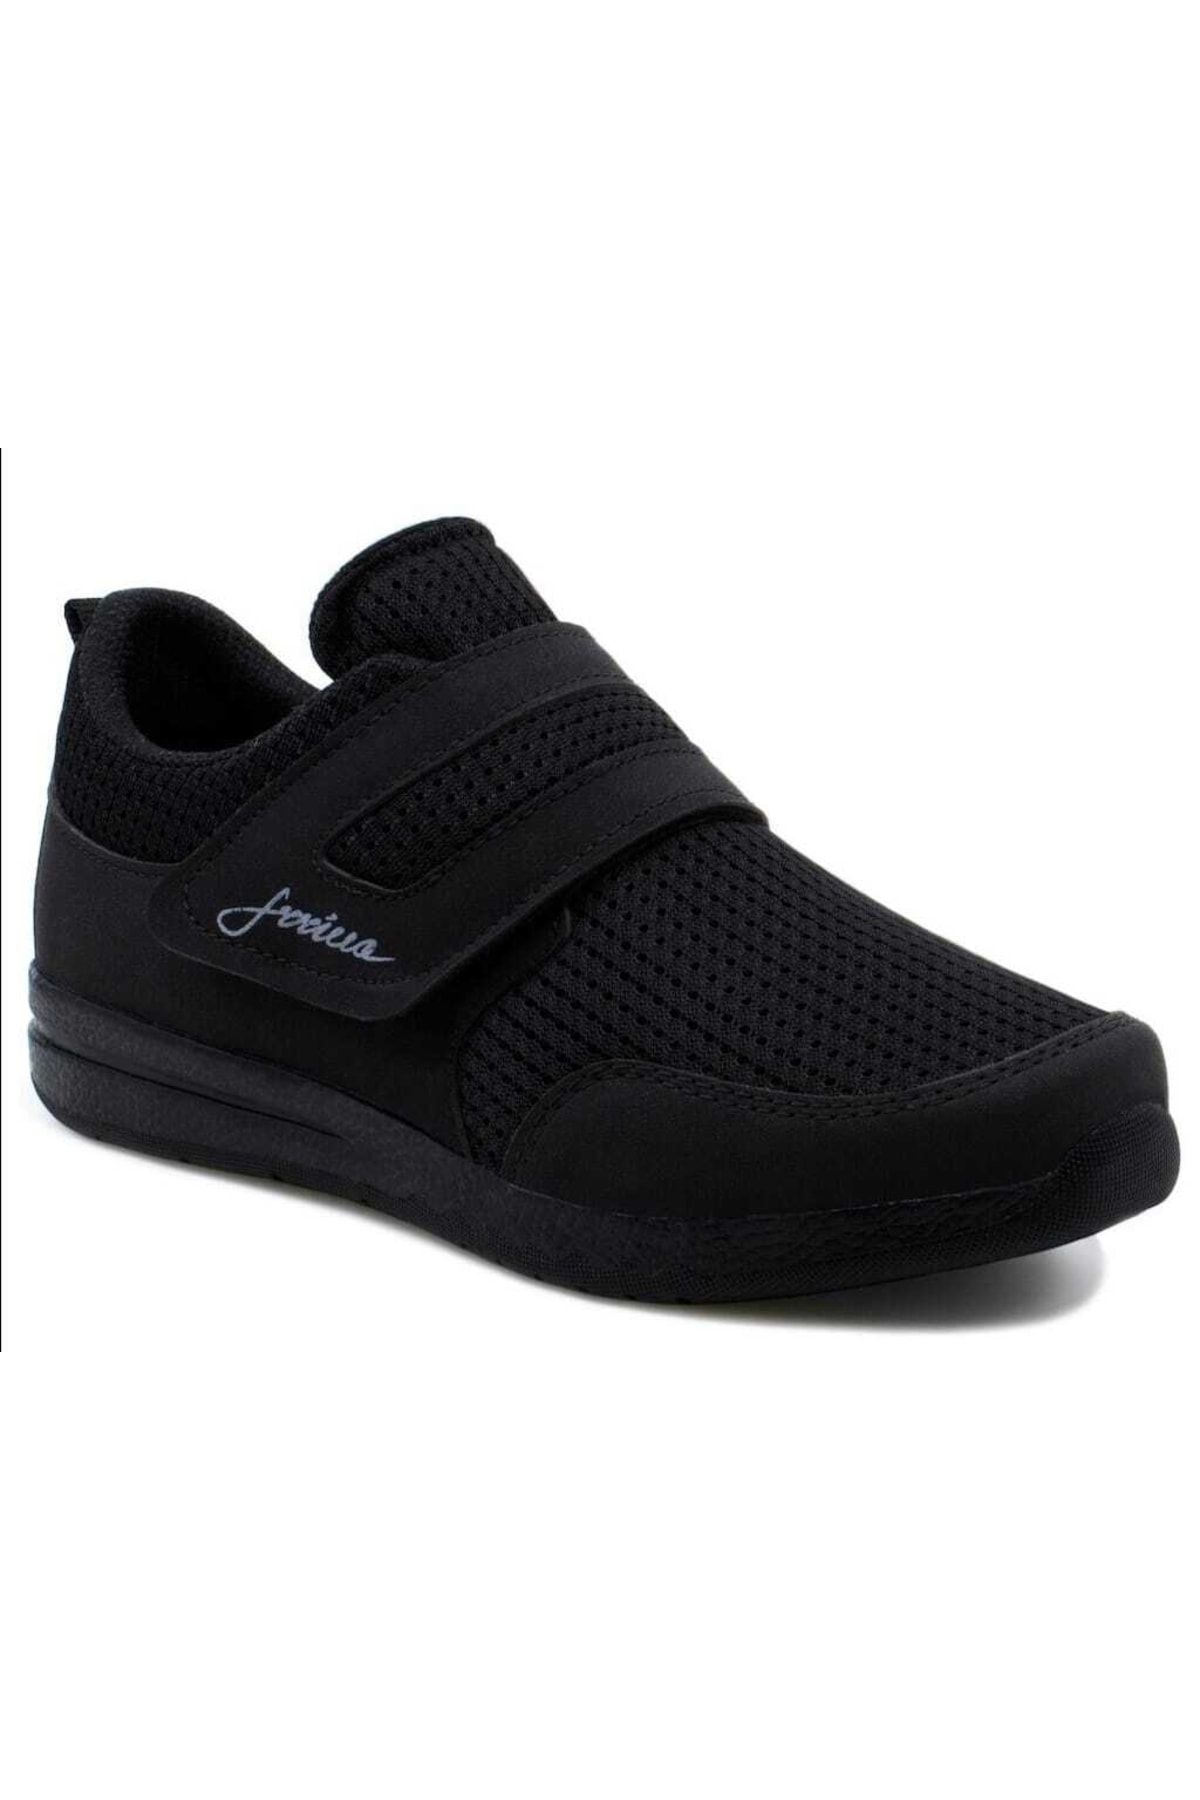 RavenShoes Unisex Cırtlı Sneaker Spor Ayakkabı